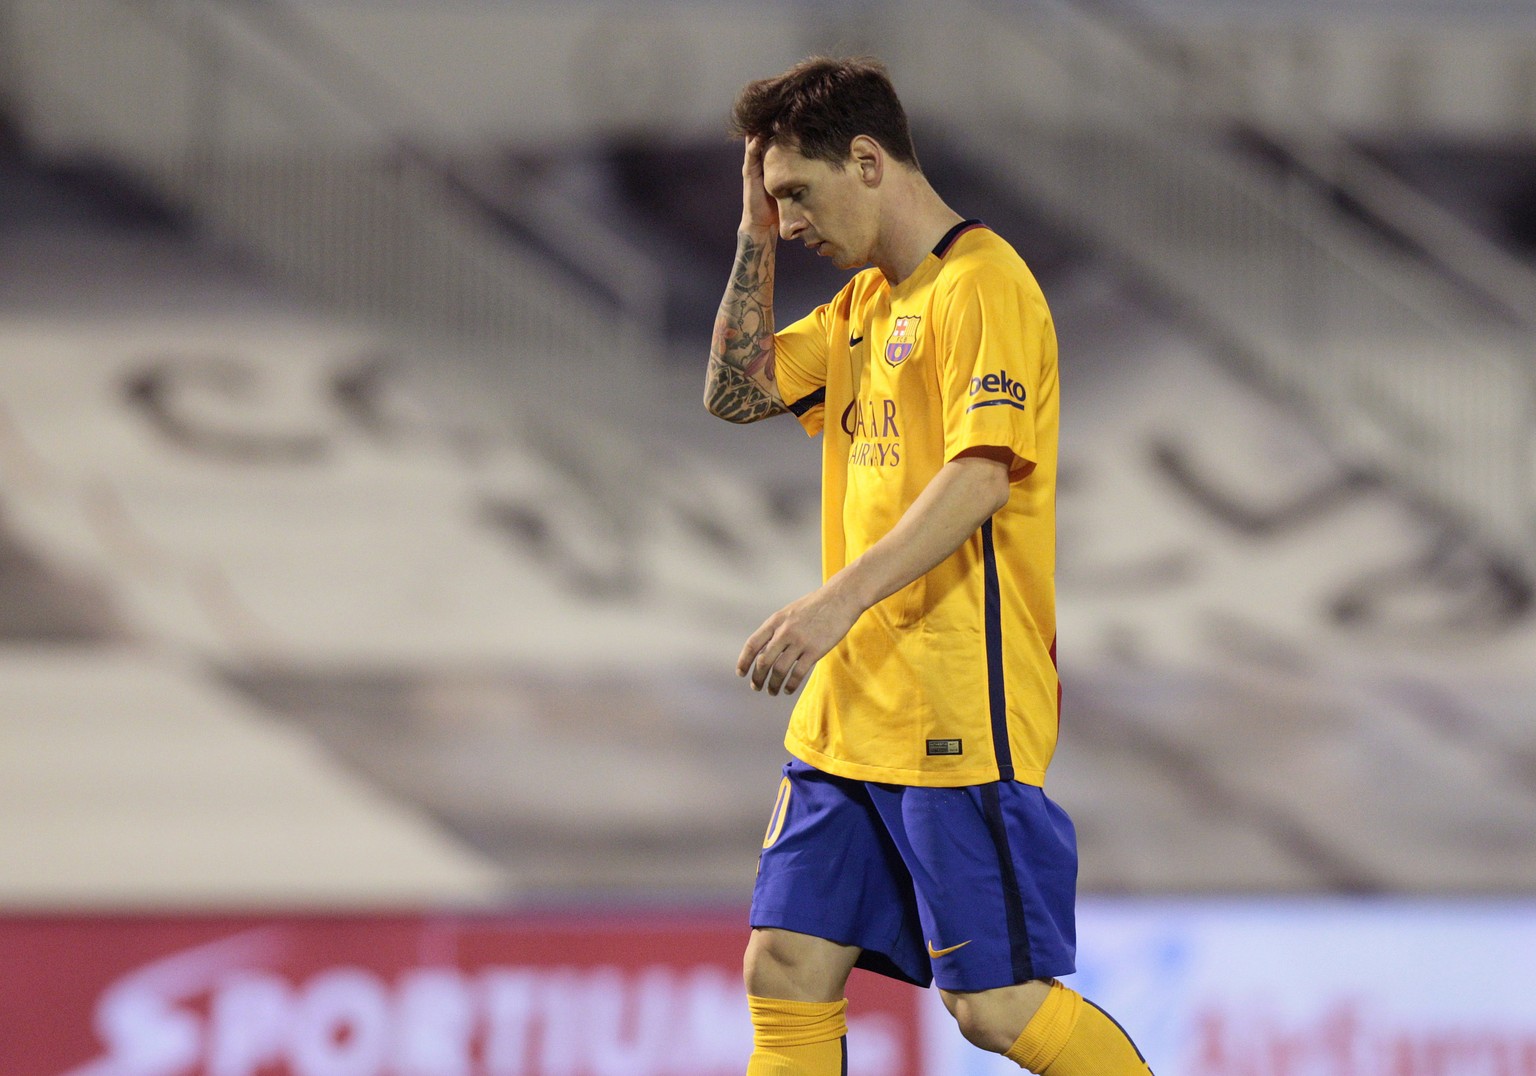 Messi weiss nicht wie ihm geschieht bei der Niederlage gegen Celta Vigo.&nbsp;<br data-editable="remove">